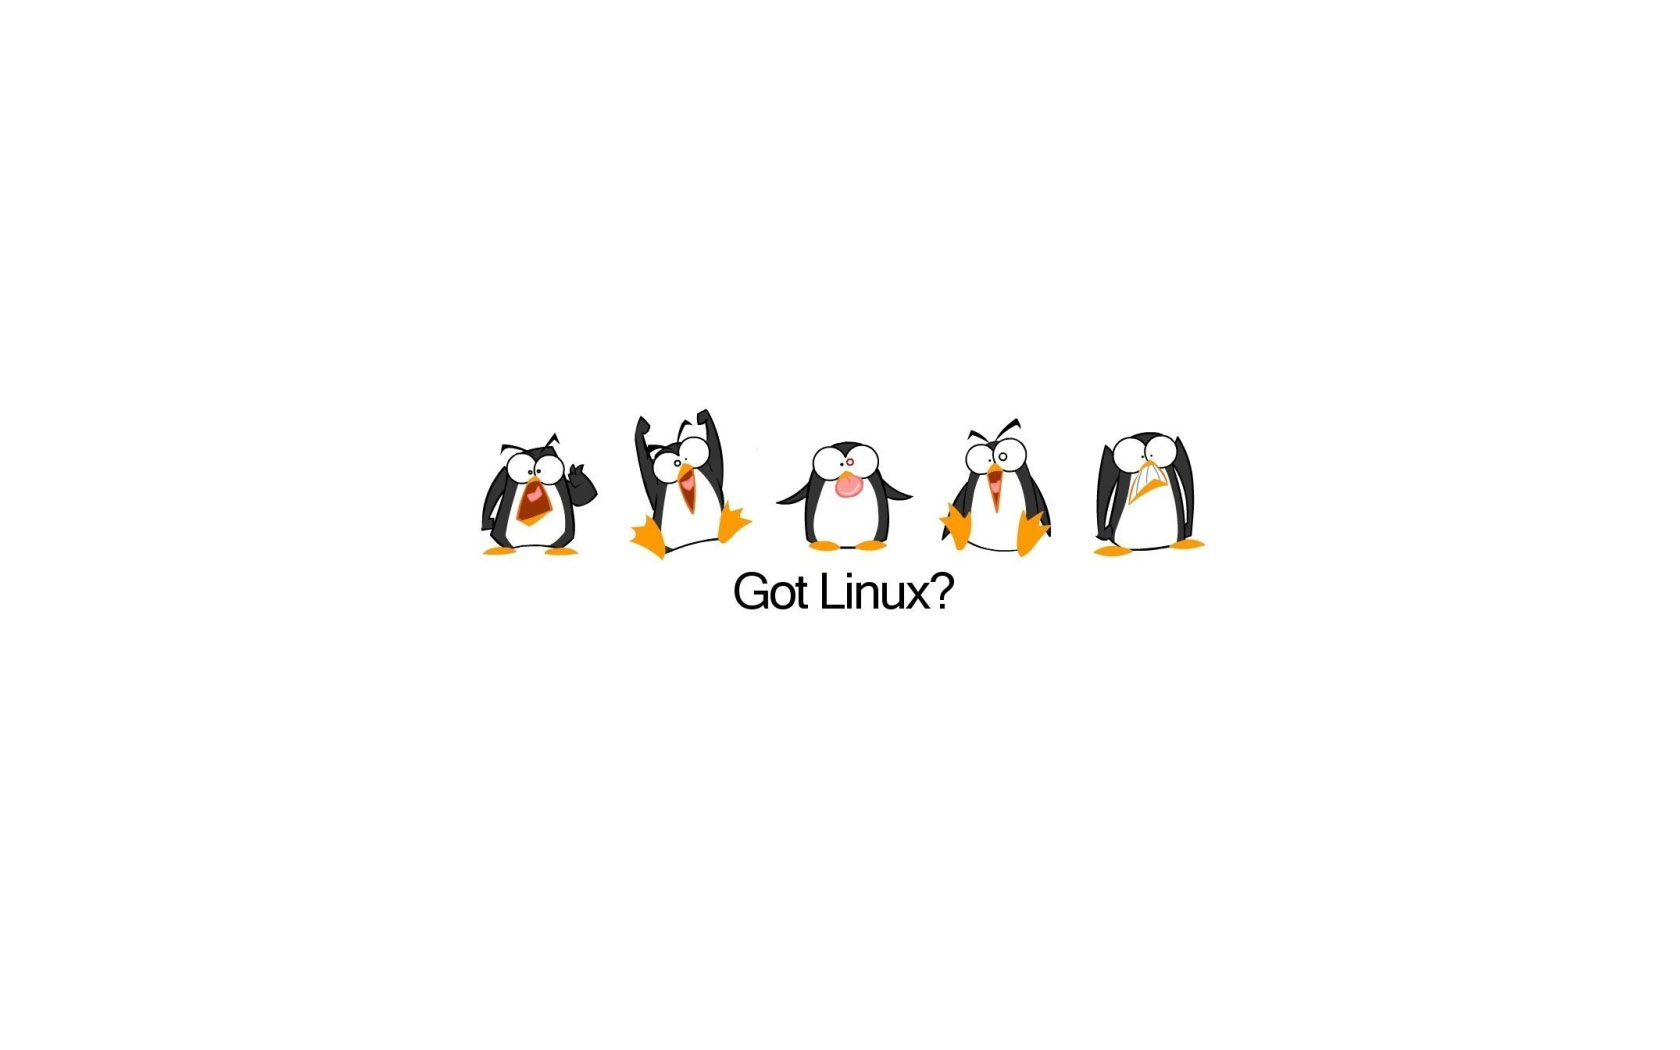 Linux Tux Wallpaper